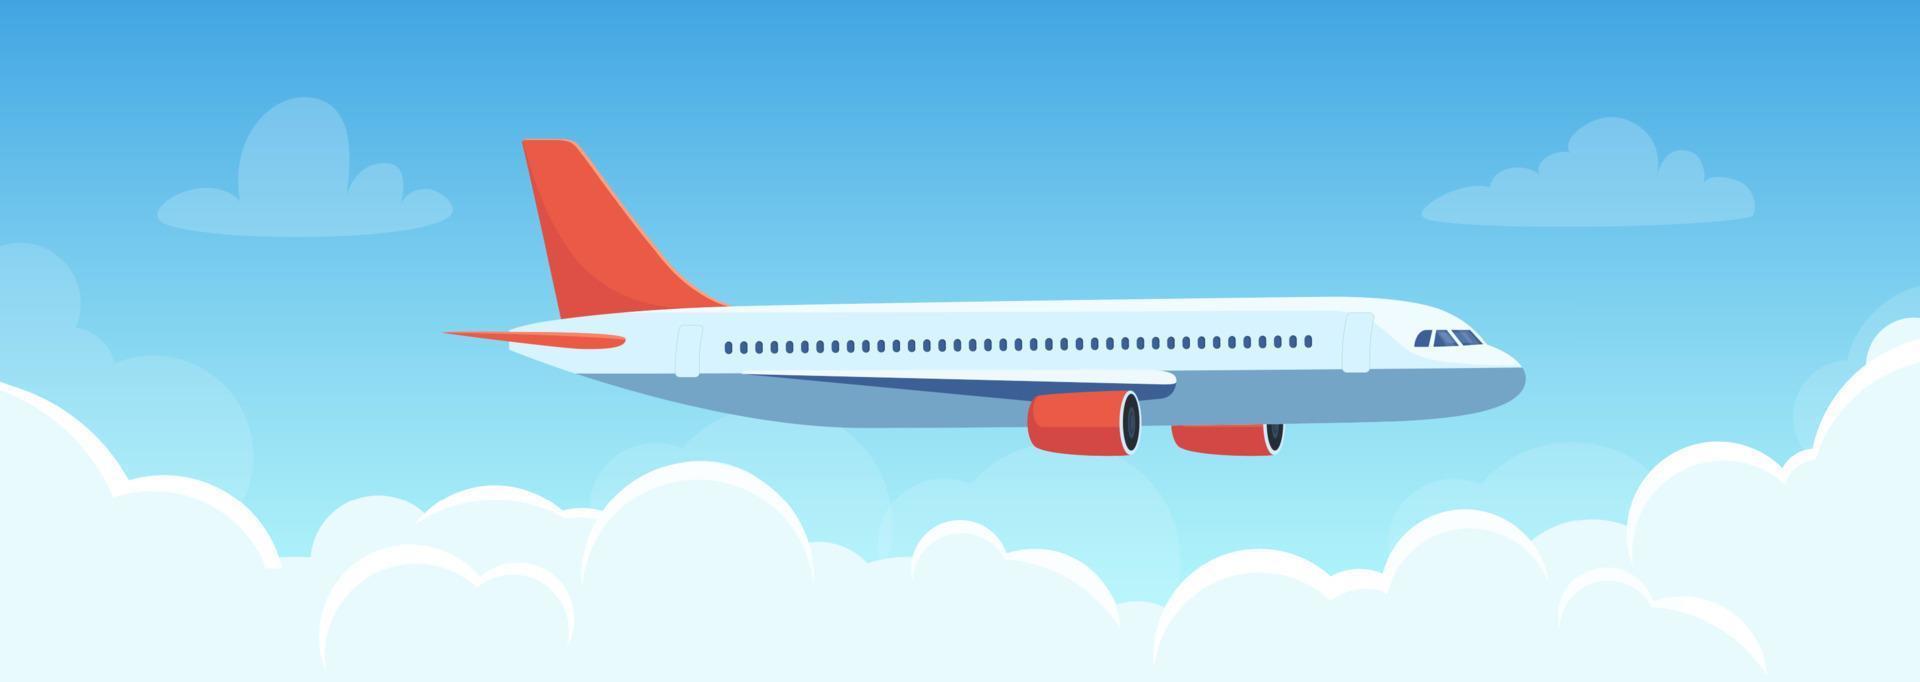 vliegend vlak bovenstaand de wolken. vliegtuig in de lucht. reizen concept illustratie voor reclame luchtvaartmaatschappij, website naar zoeken voor lucht kaartjes, reizen bureau. op reis folder, banier, vector illustratie.